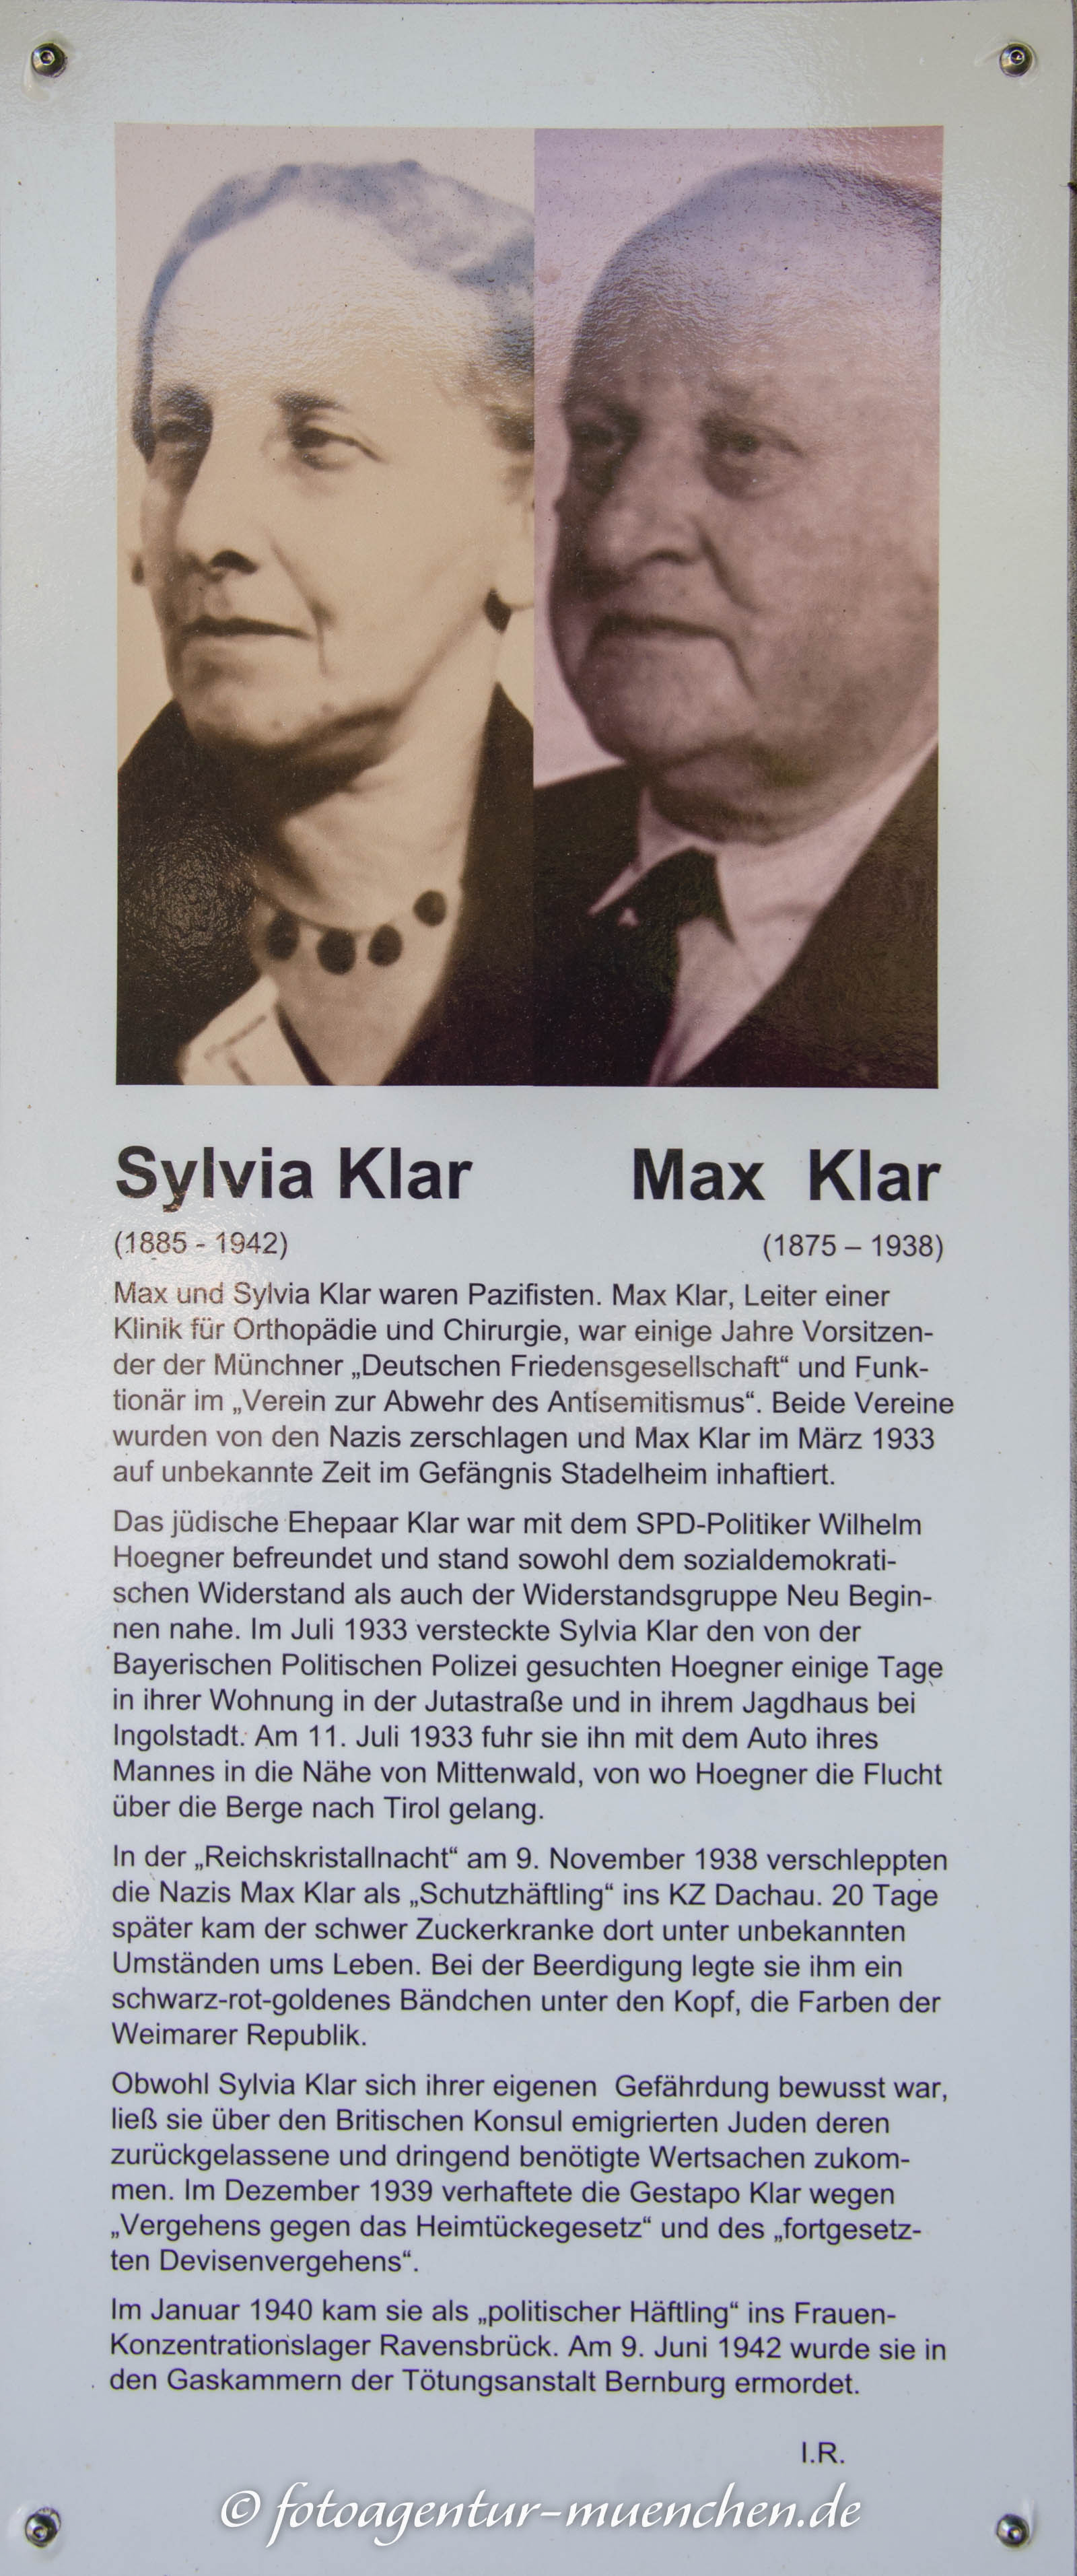 Gedenkstele für Sylvia Klar und Max Klar